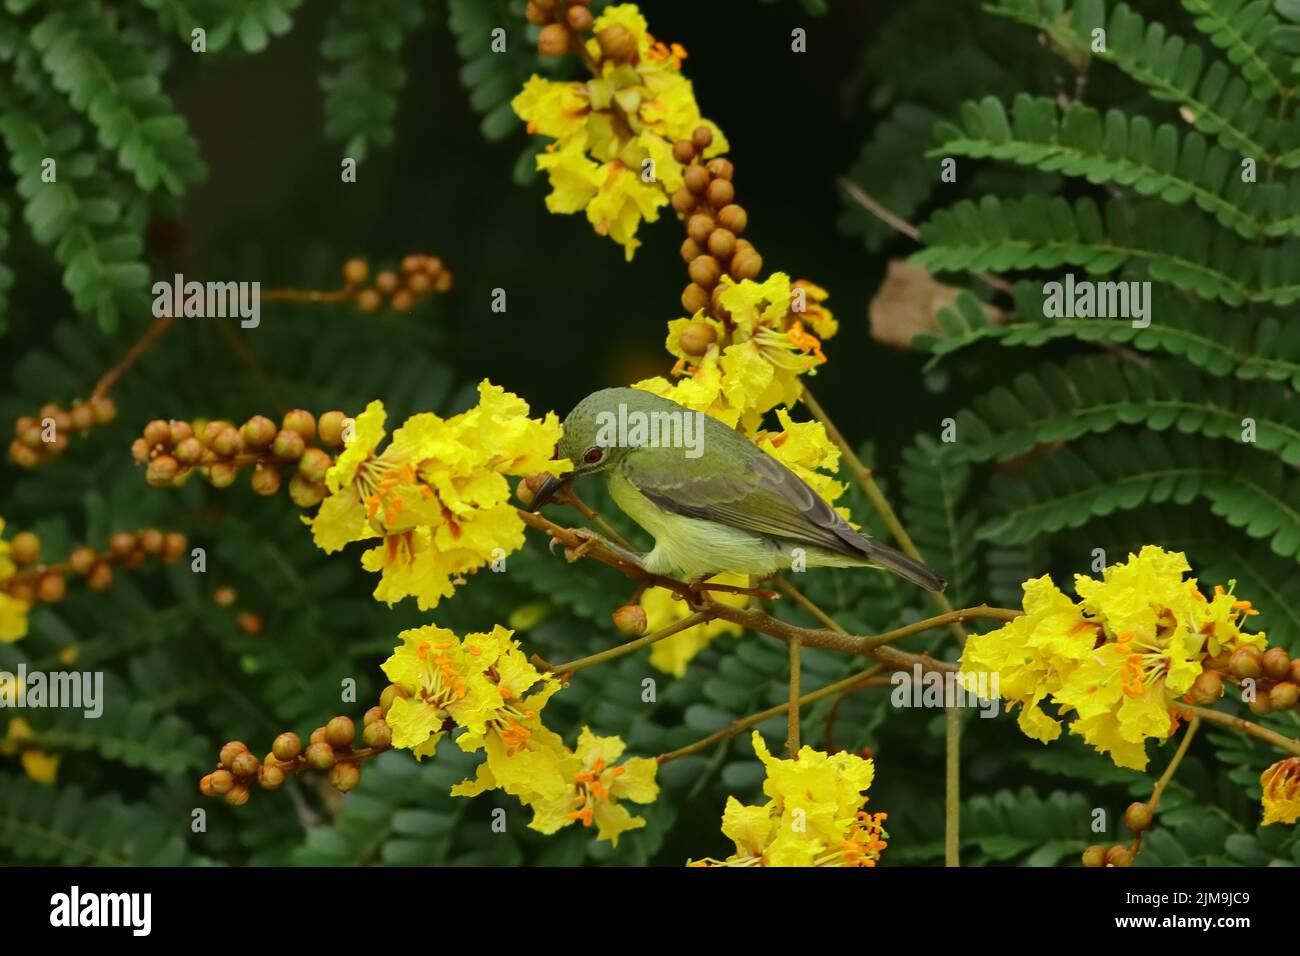 Ein weiblicher Sonnenvögel mit Olivenrücken staut sich unter den gelben Blüten der Gelben Flametere in Malaysia. Stockfoto